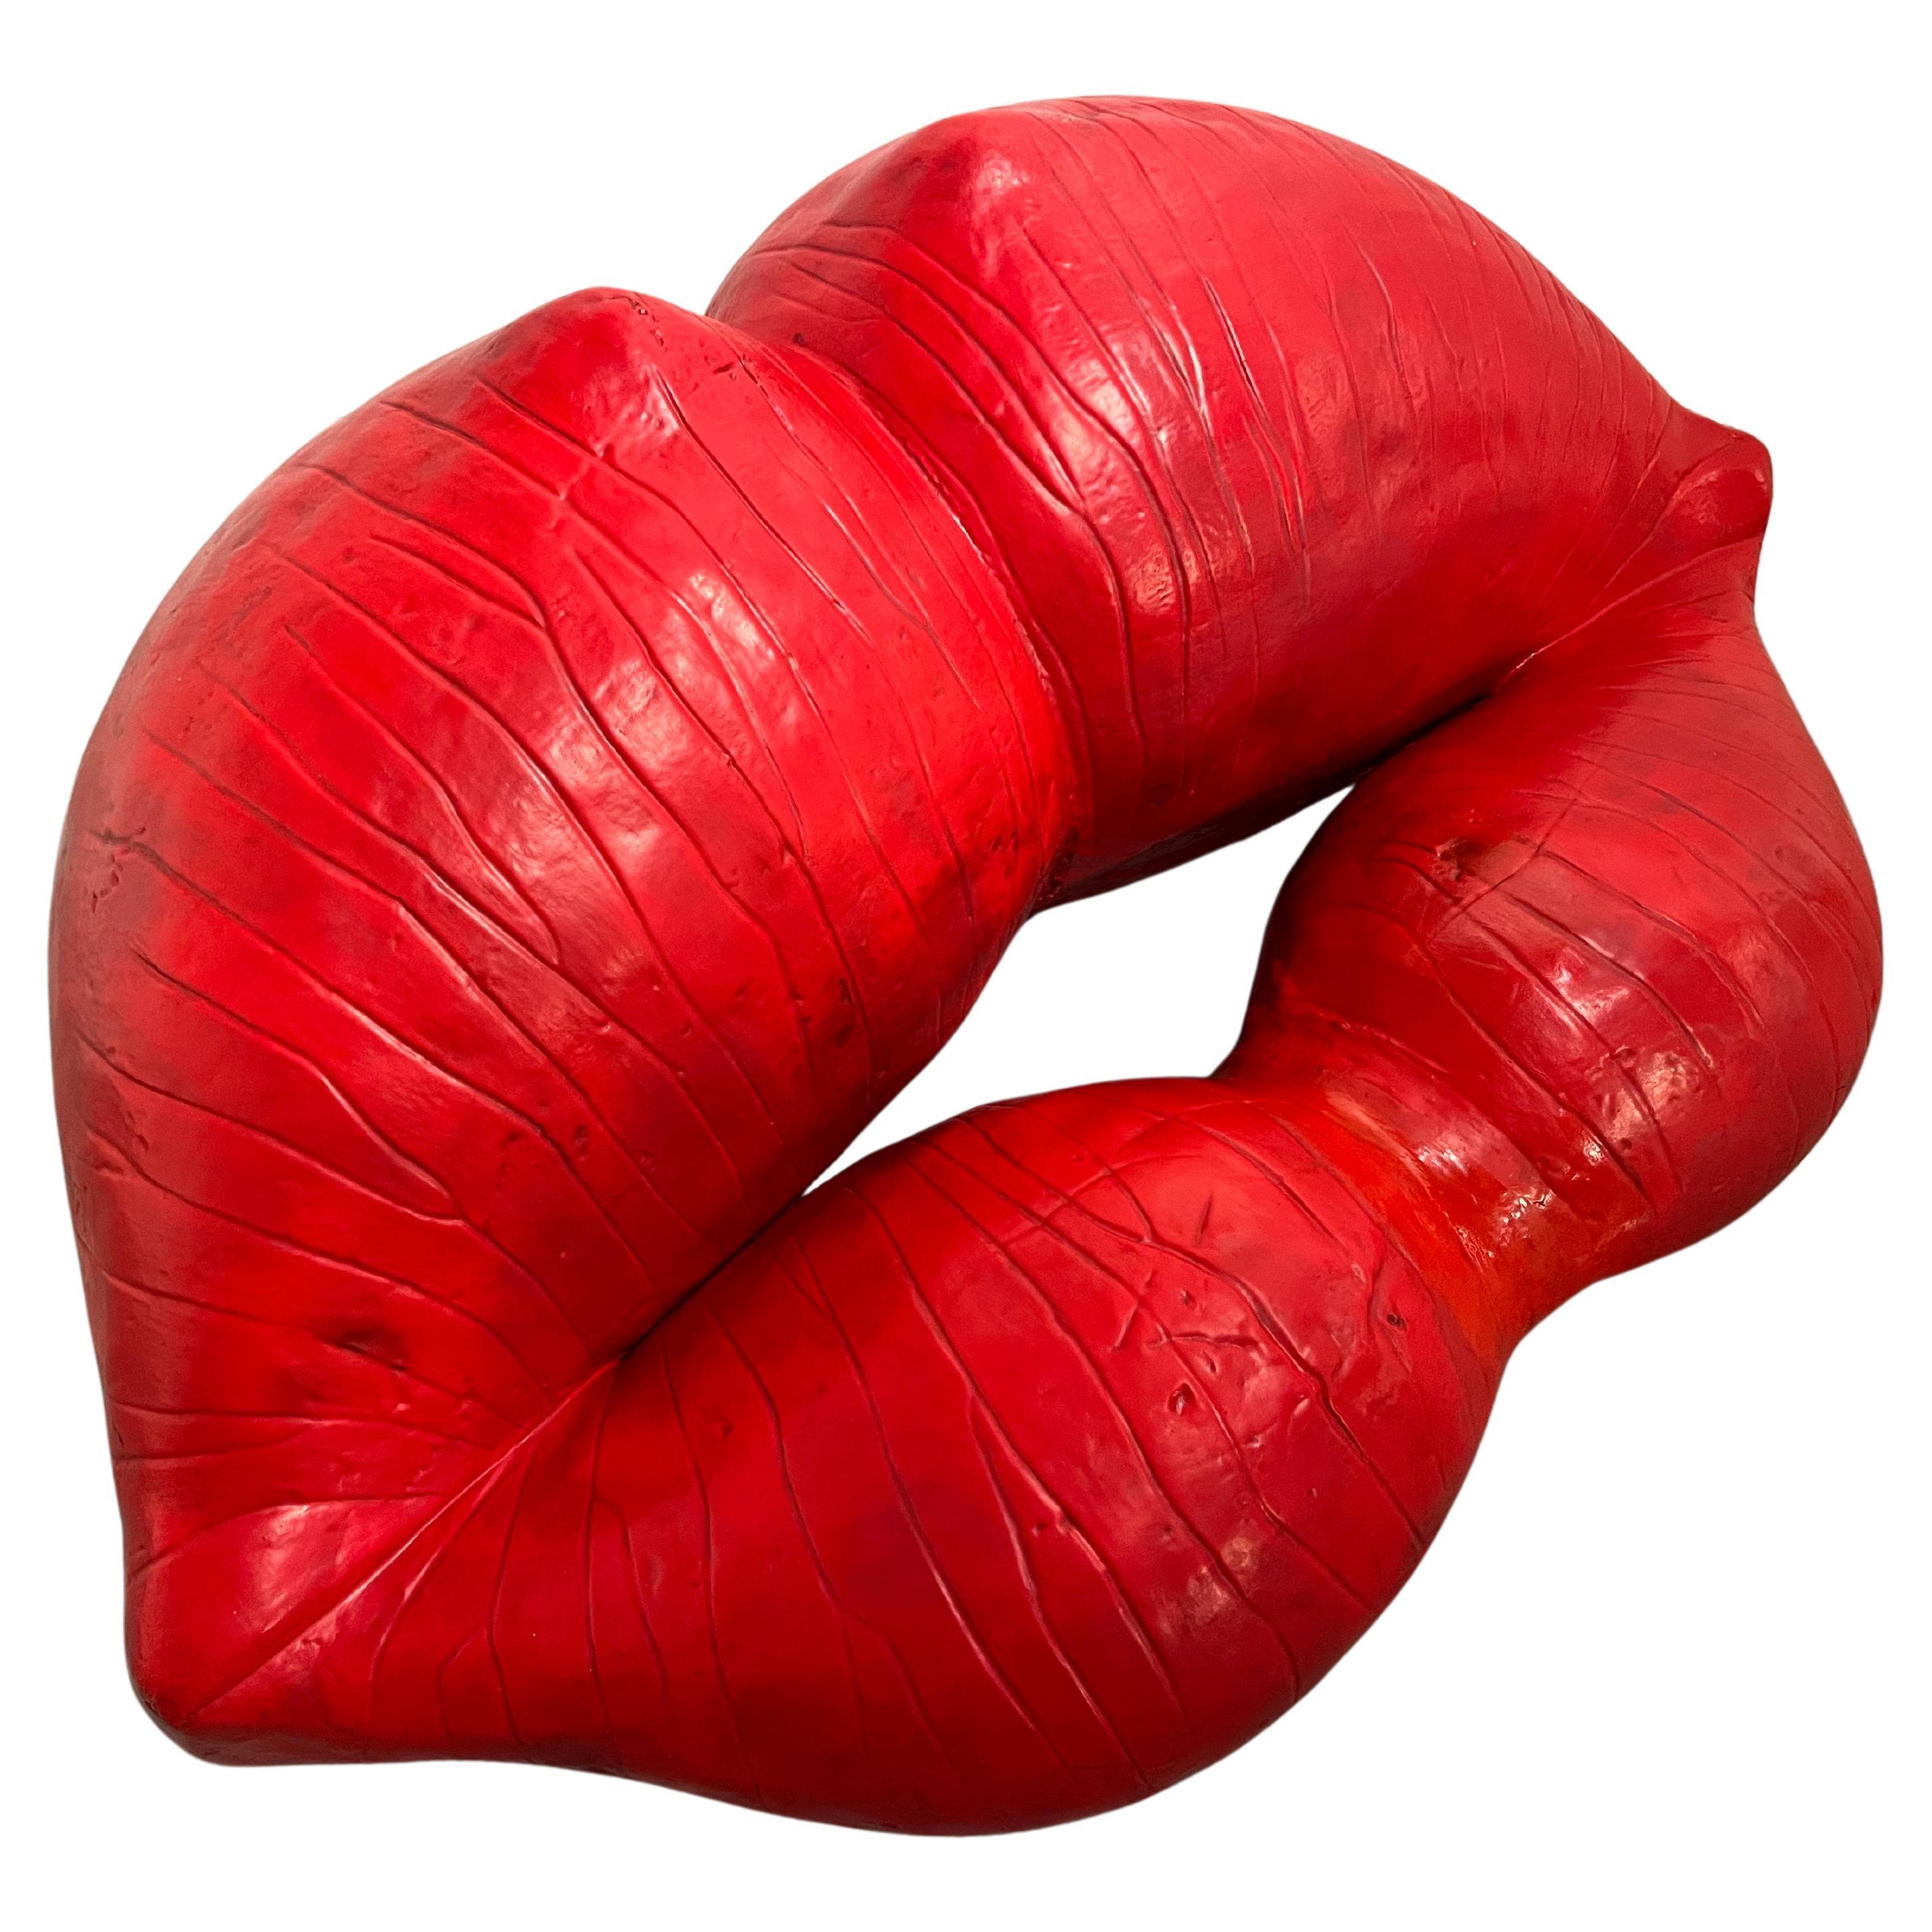 Louis Durot Artiste Français d'après guerre Lips rouge L'echauffeuse Canapé Canapé Sculpture